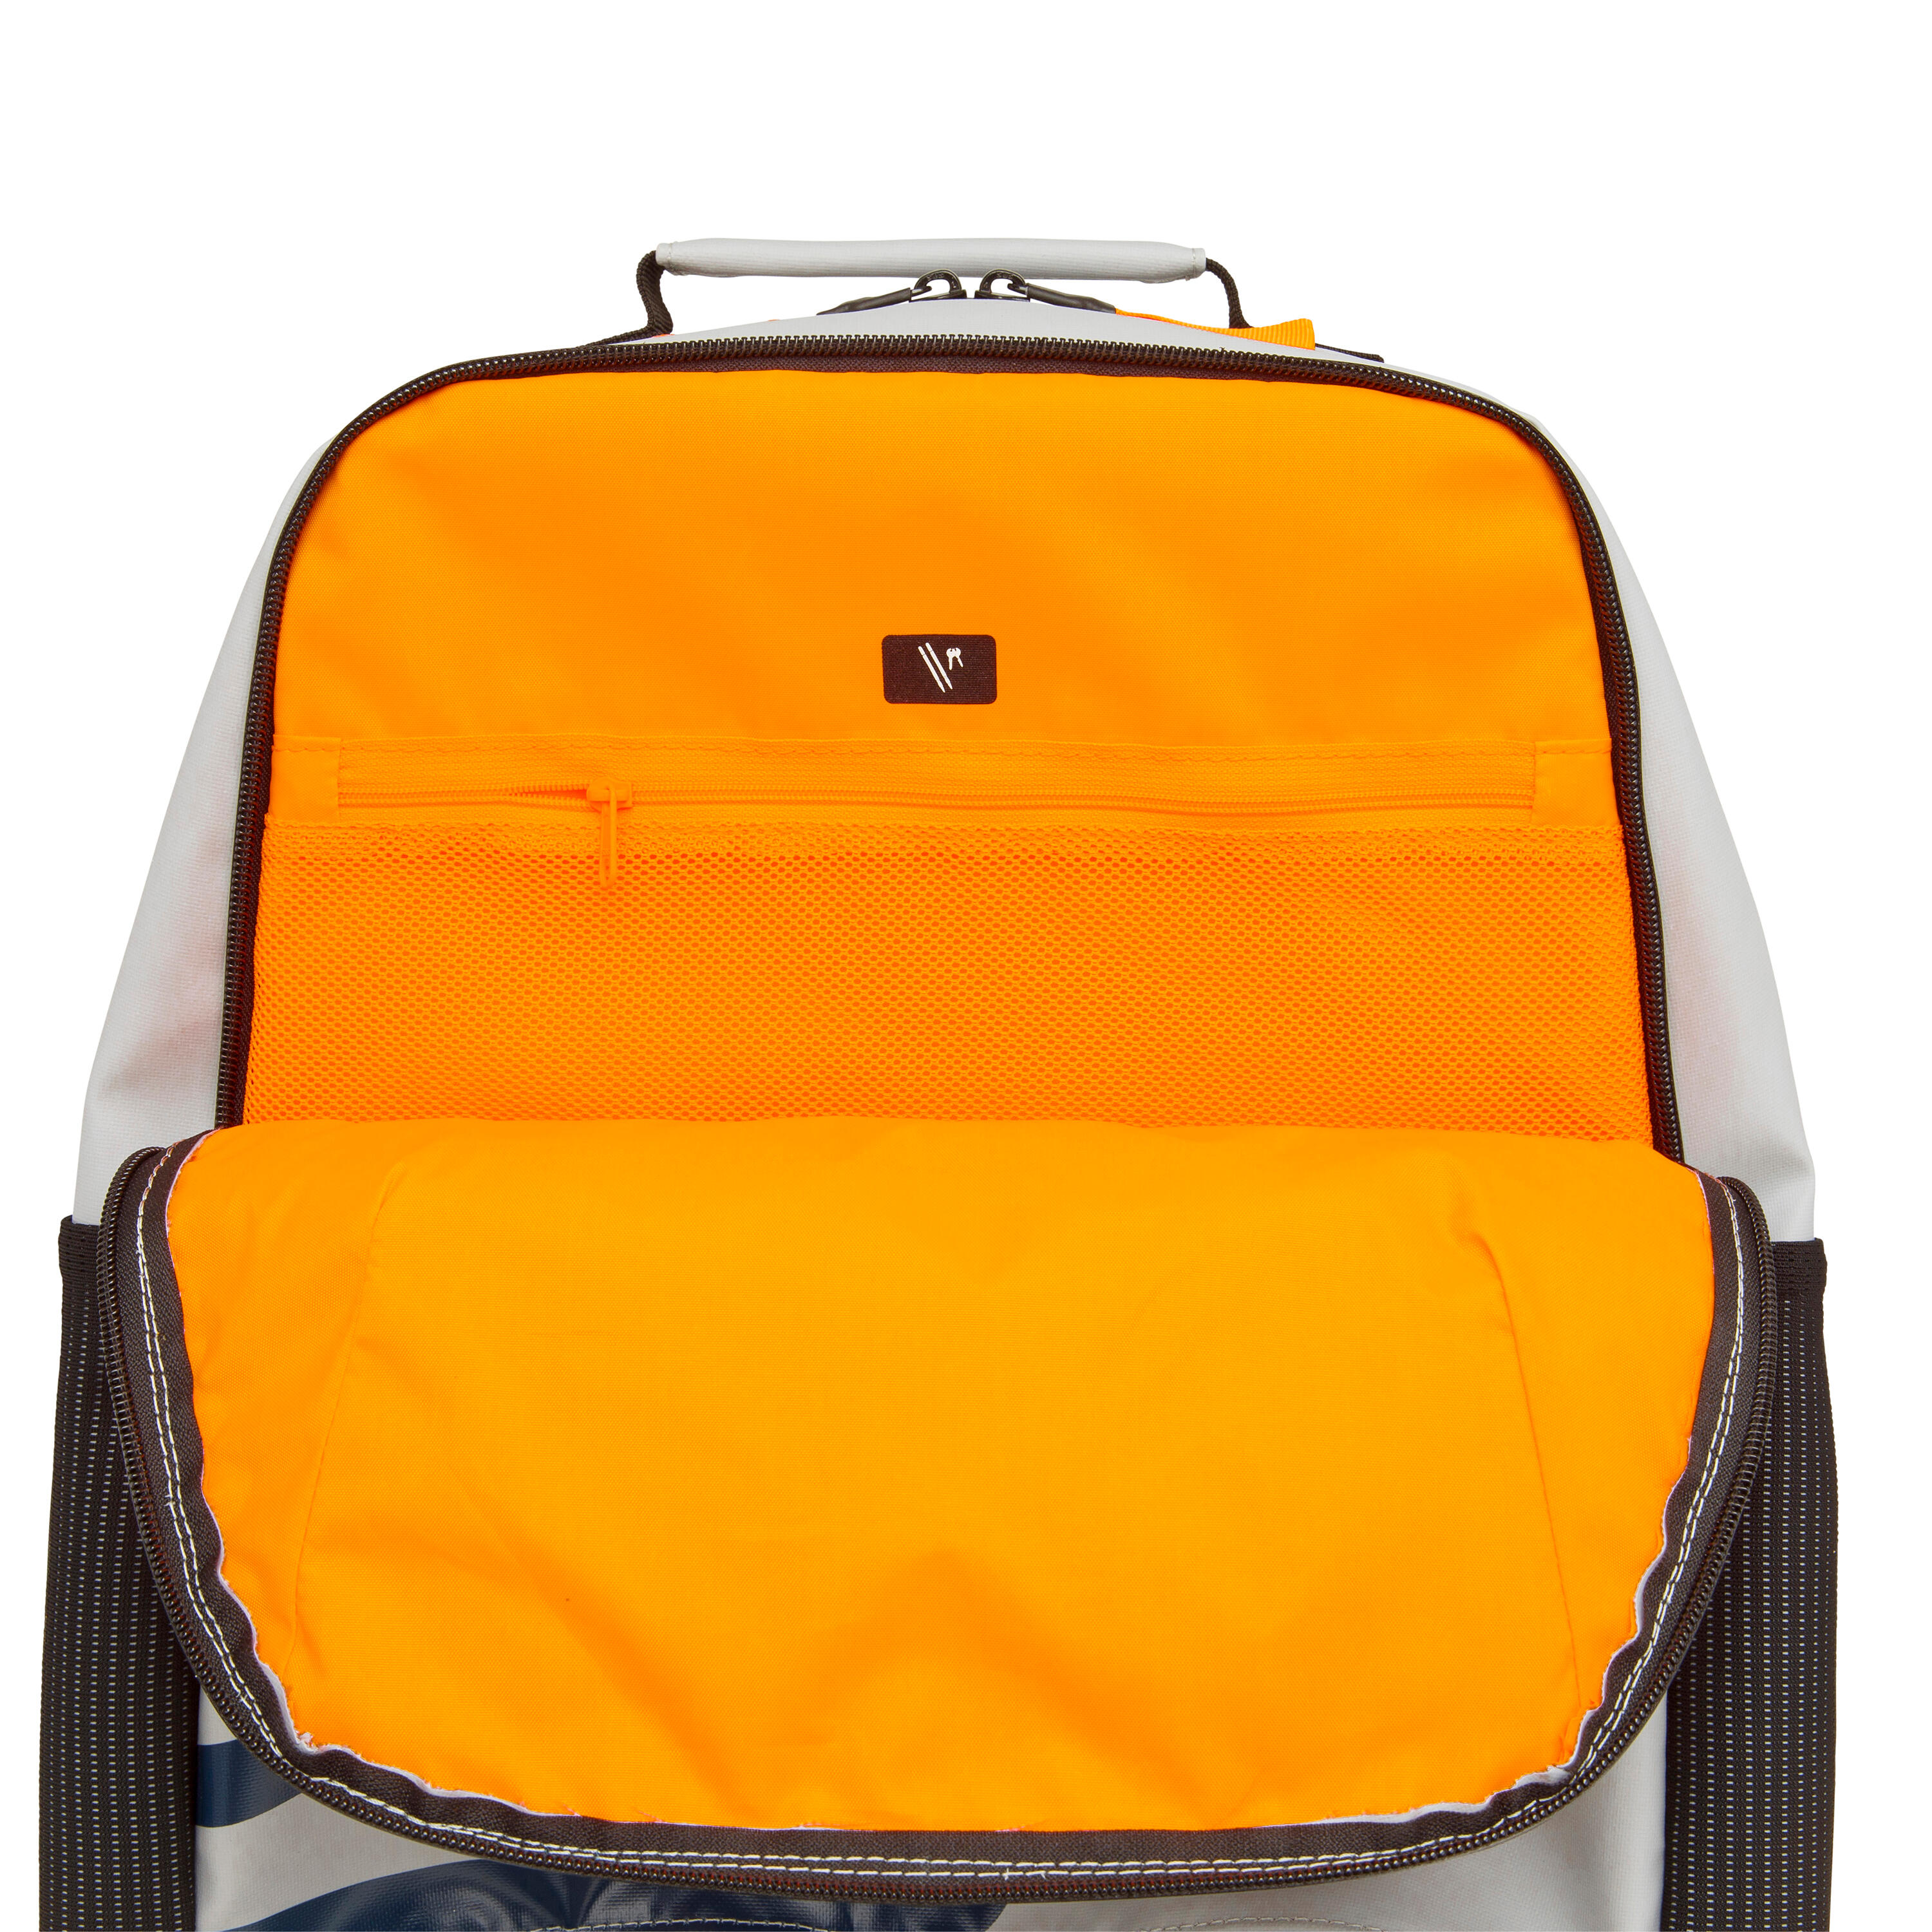 Waterproof backpack 25 L - Grey 11/11